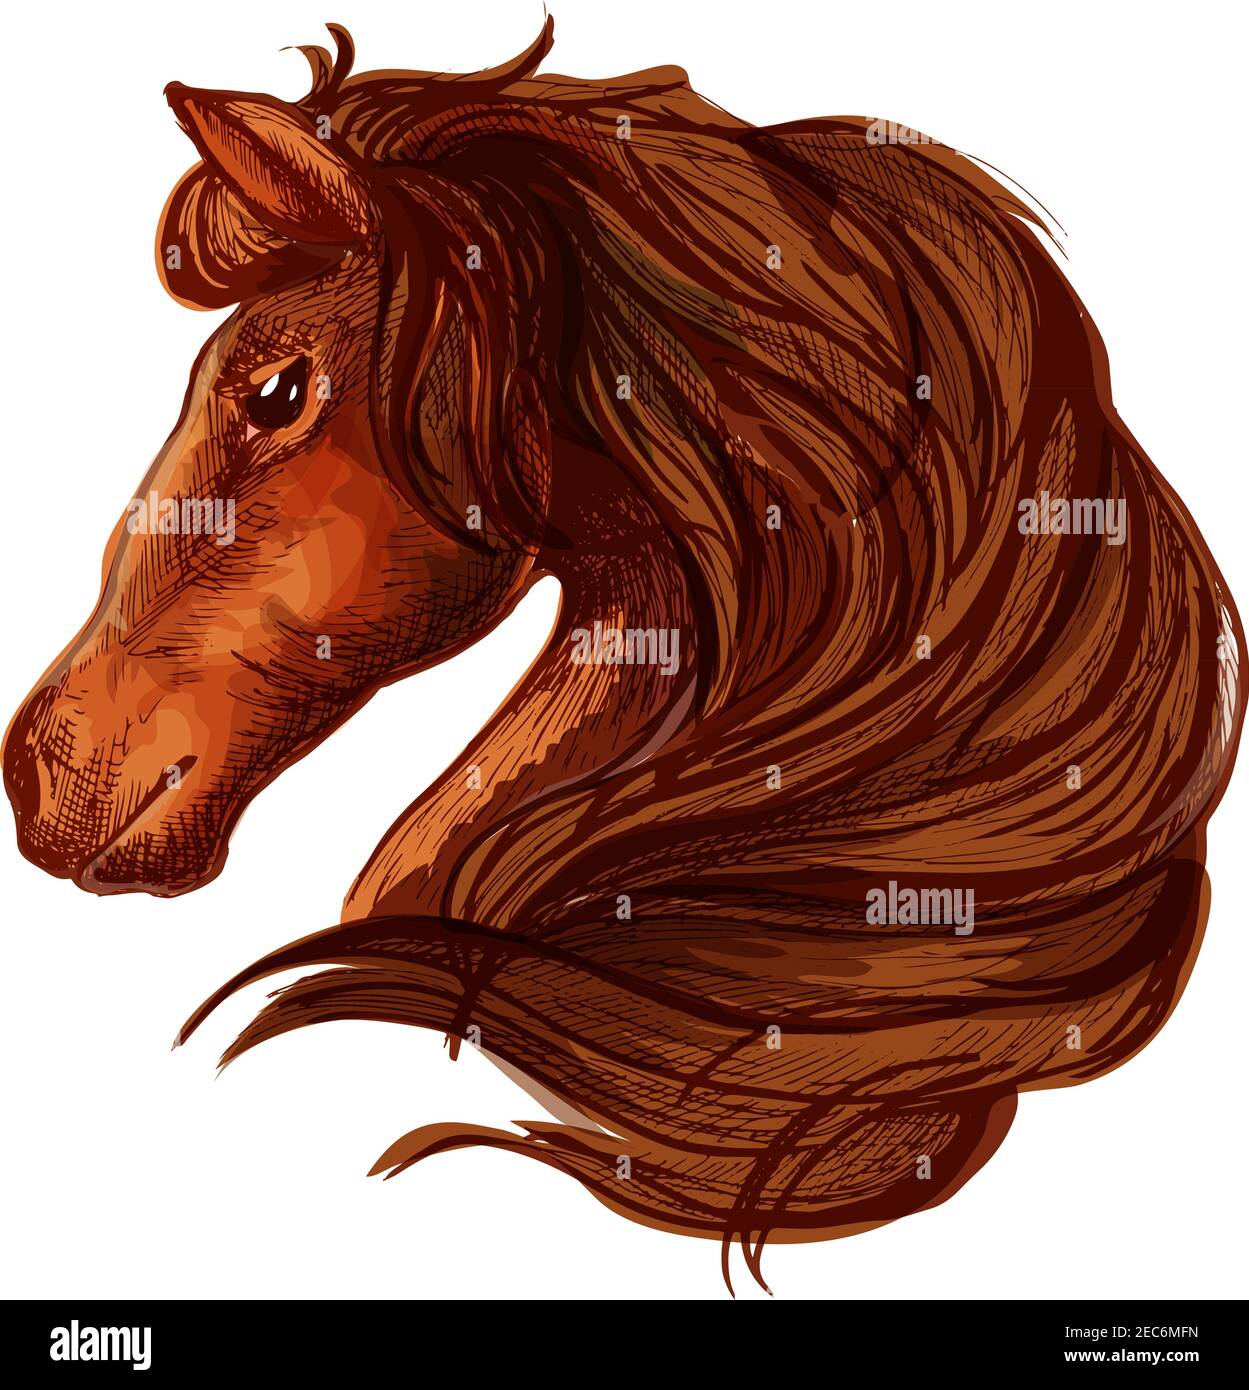 Pferd mit langer gewellter und langer Mähne. Portrait von braunem Lorbeerhengst mit glänzenden Augen und gutherzigen Blicken Stock Vektor